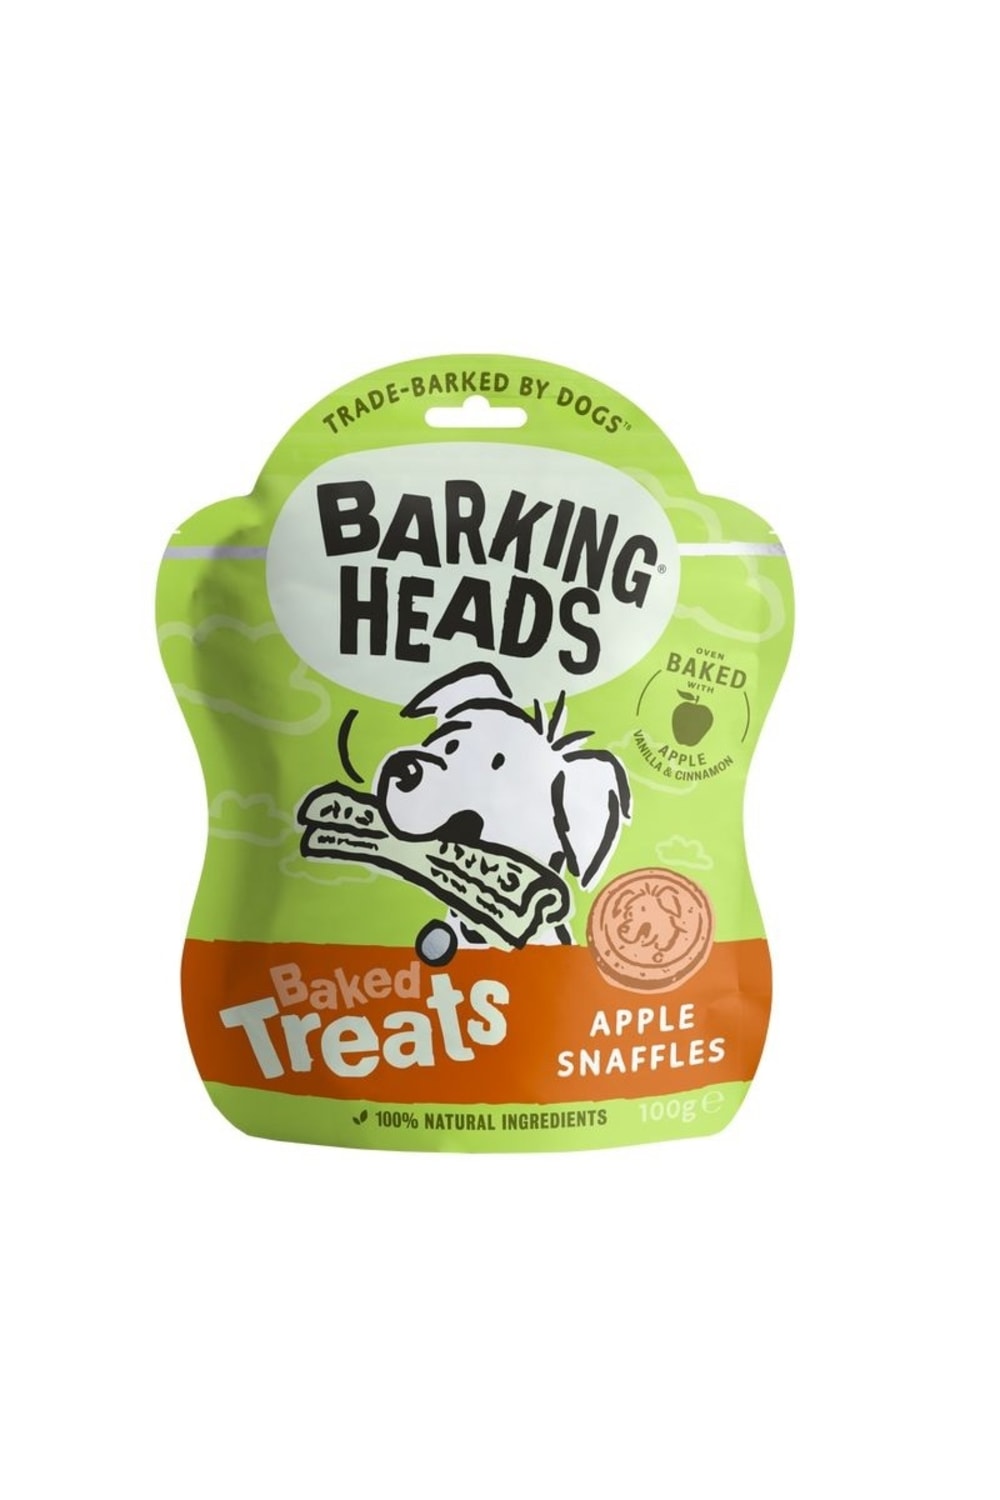 Barking Heads Apple Snaffles Baked Dog Treats (May Vary) (3.5oz)